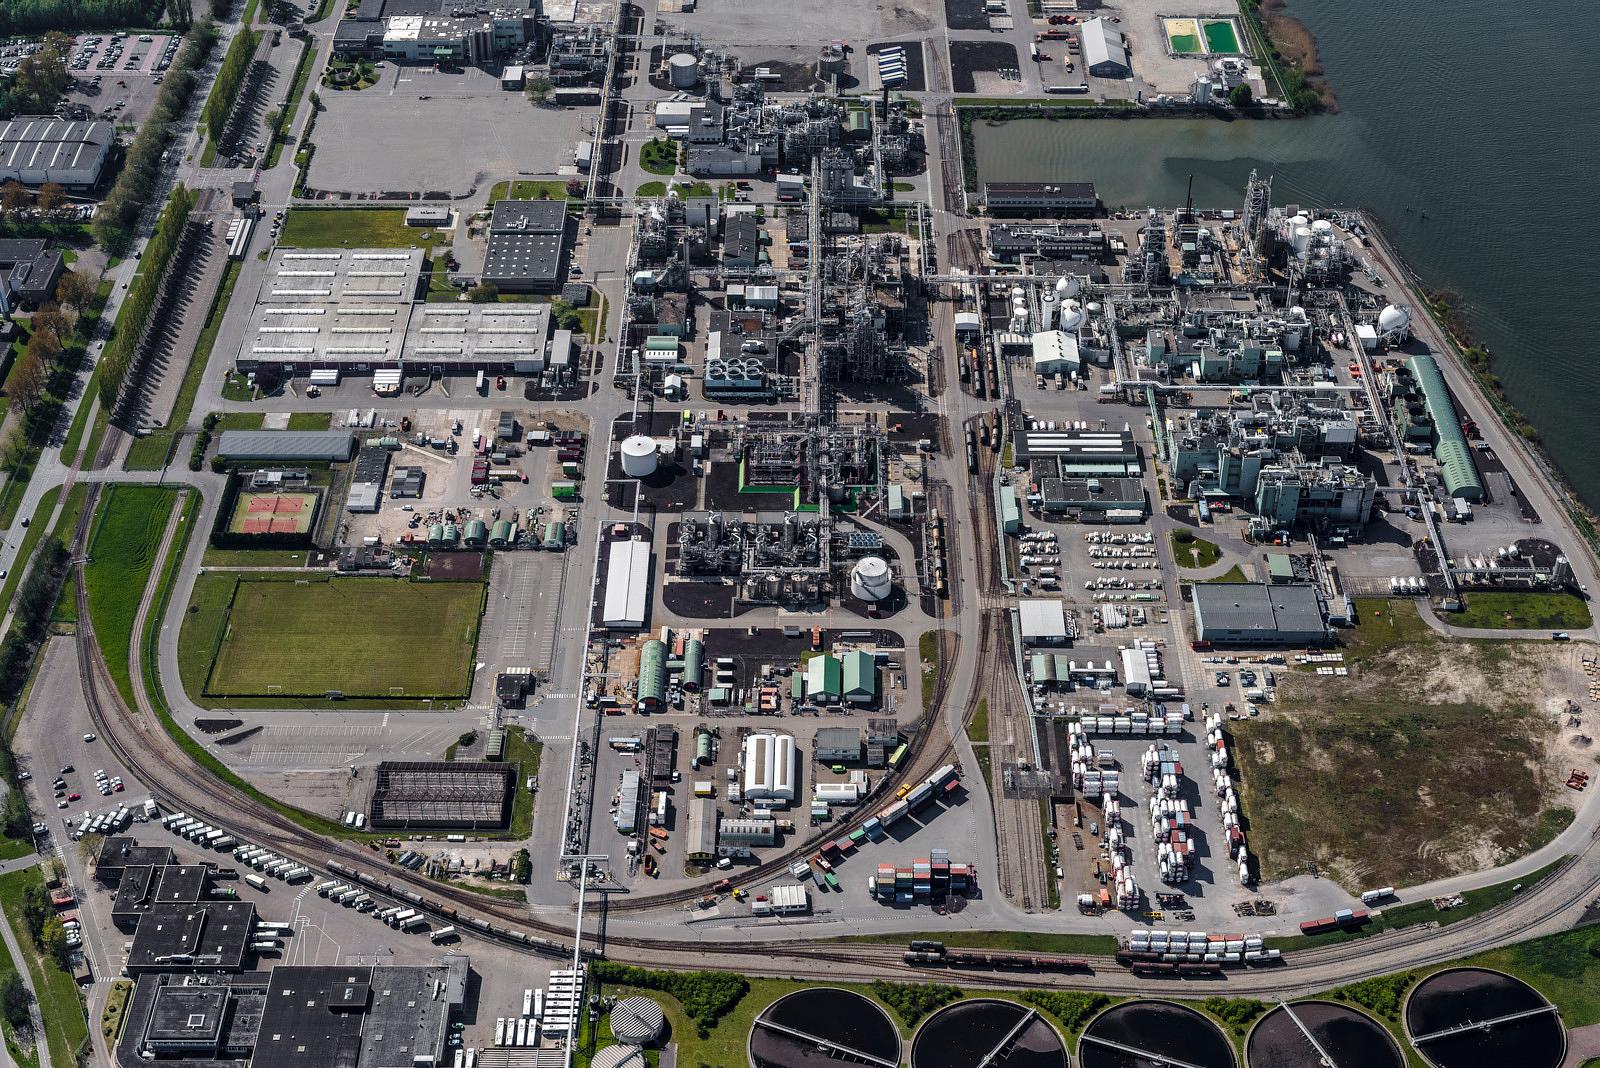 De chemiebedrijven leveren innovatieve producten, materialen en diensten. De locatie Dordrecht bestaat sinds 1959. Er staan drie grote geïntegreerde productie units voor het vervaardigen van kunststoffen en koel- en koudemiddelen. Het is de grootste productievestiging van Europa en er werken 500 mensen. Foto John Gundlach